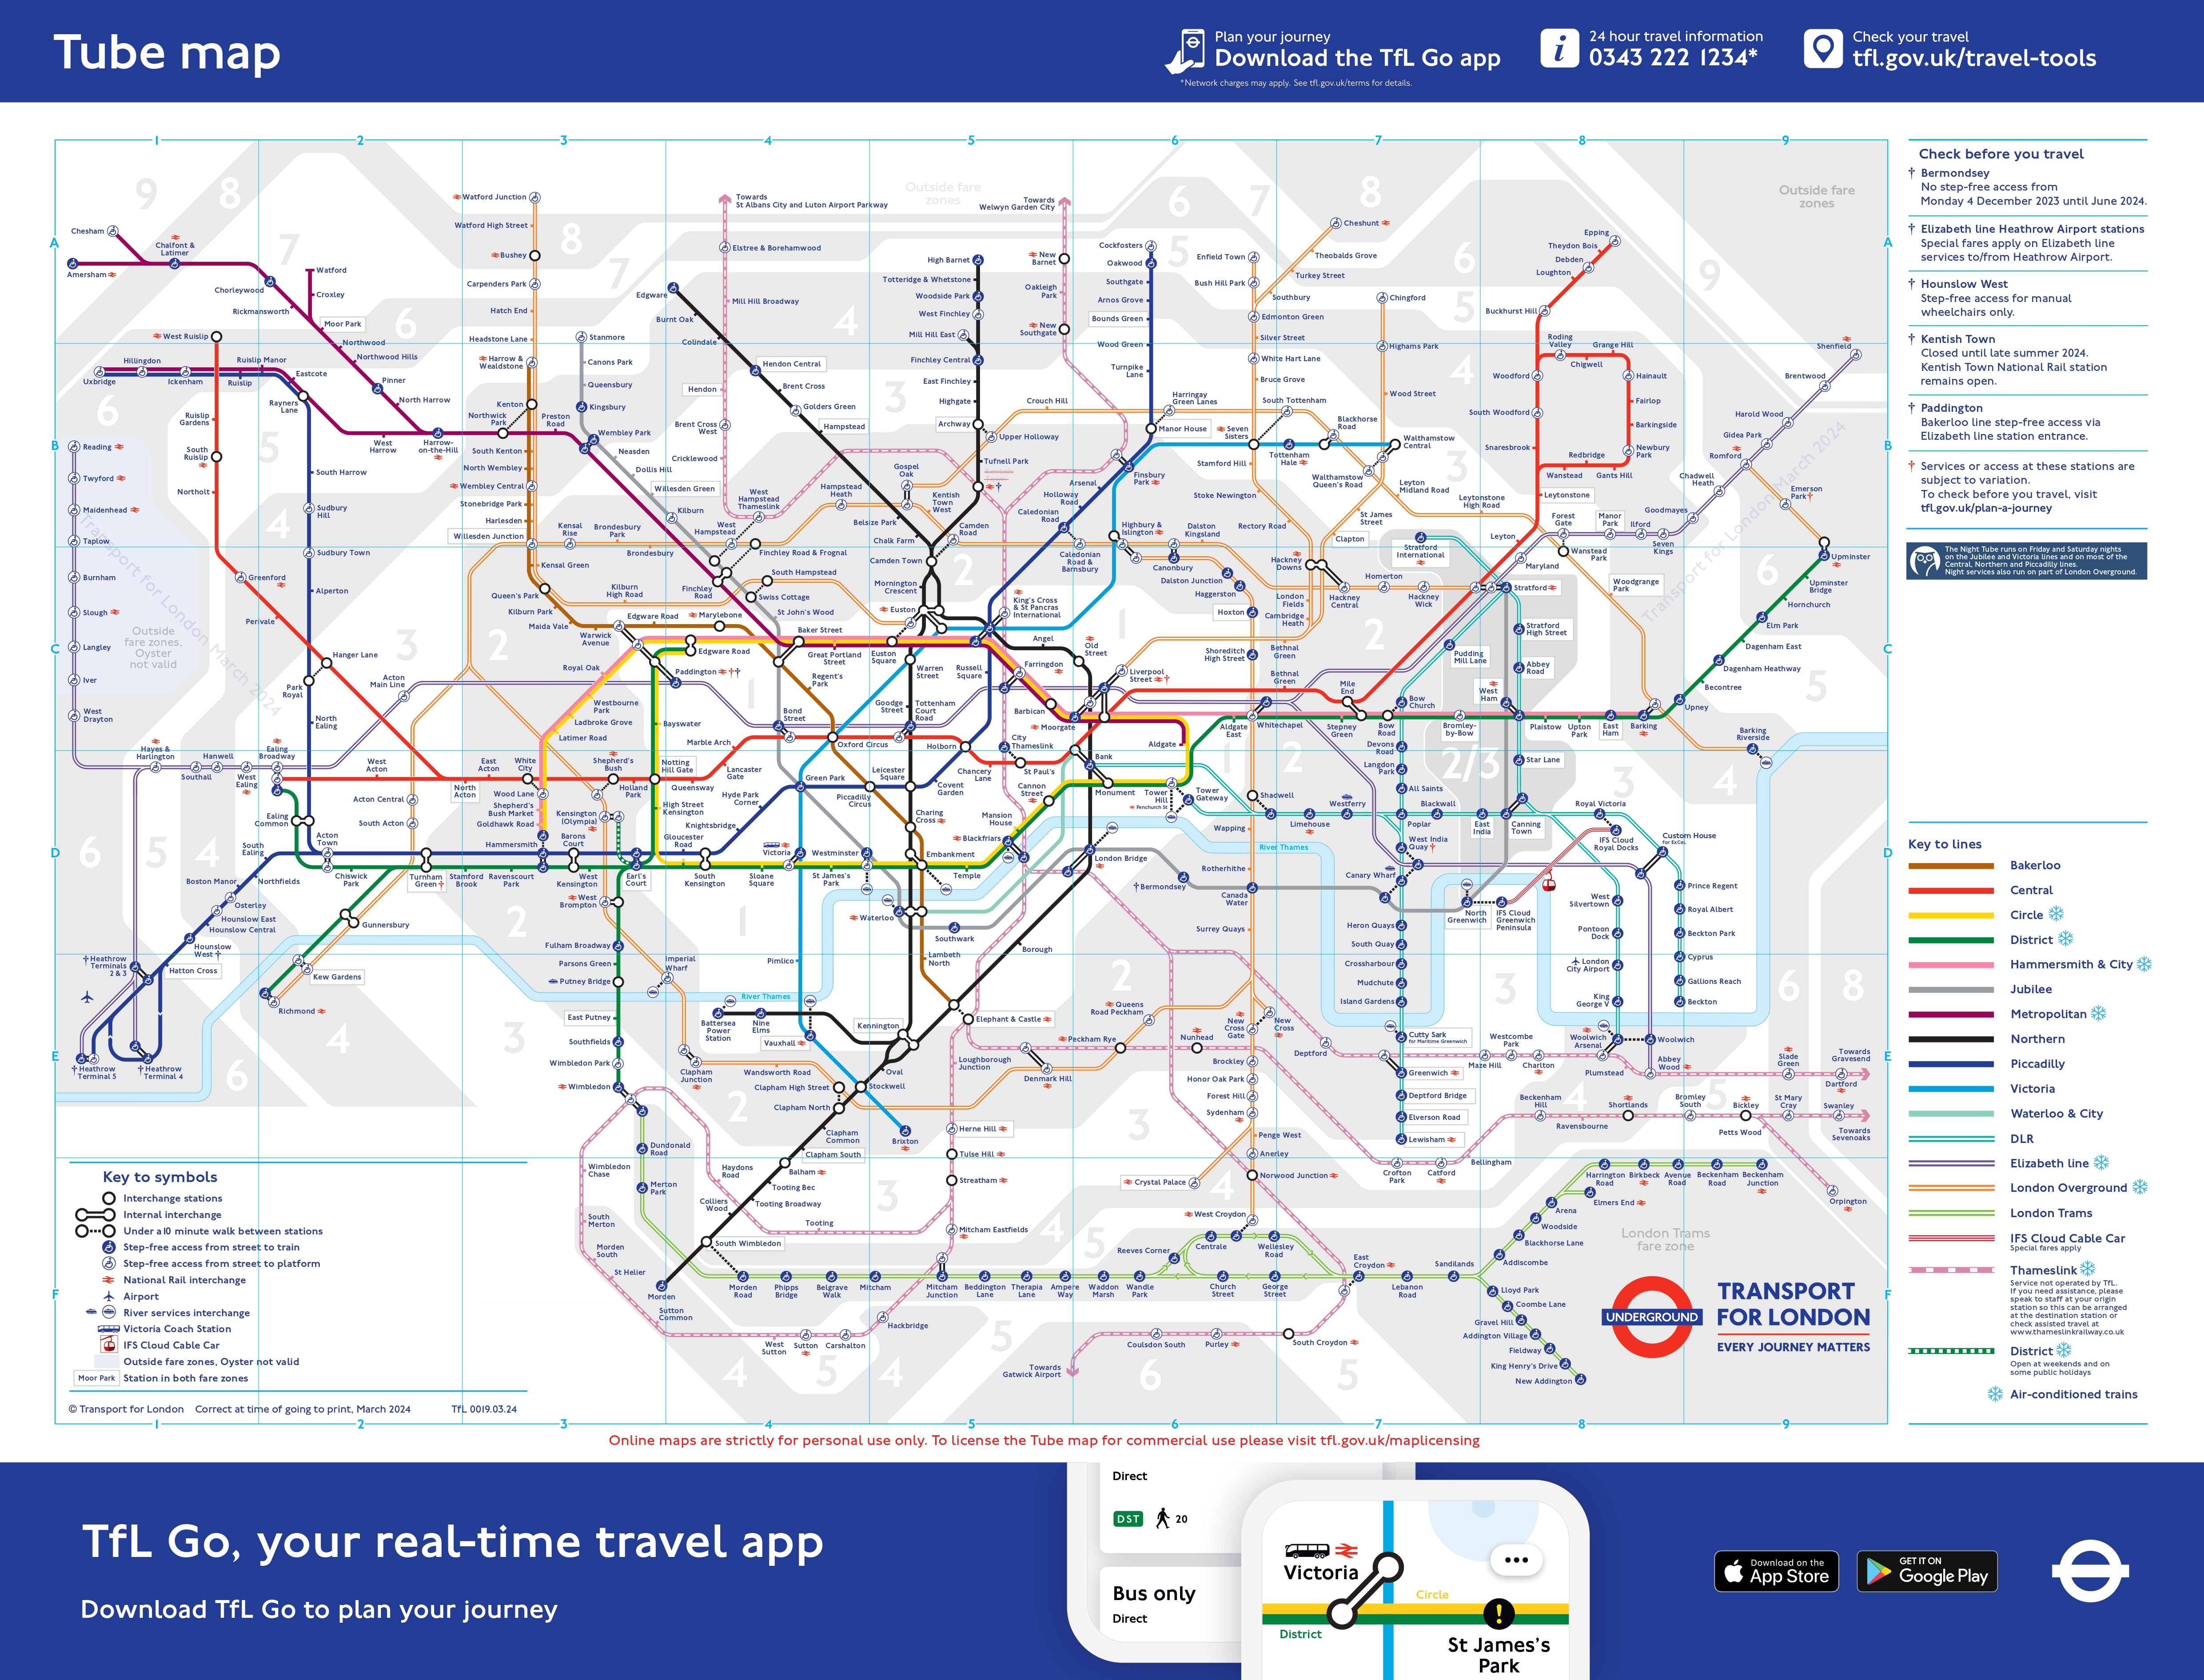 Mapa detallado del metro de Londres en alta calidad